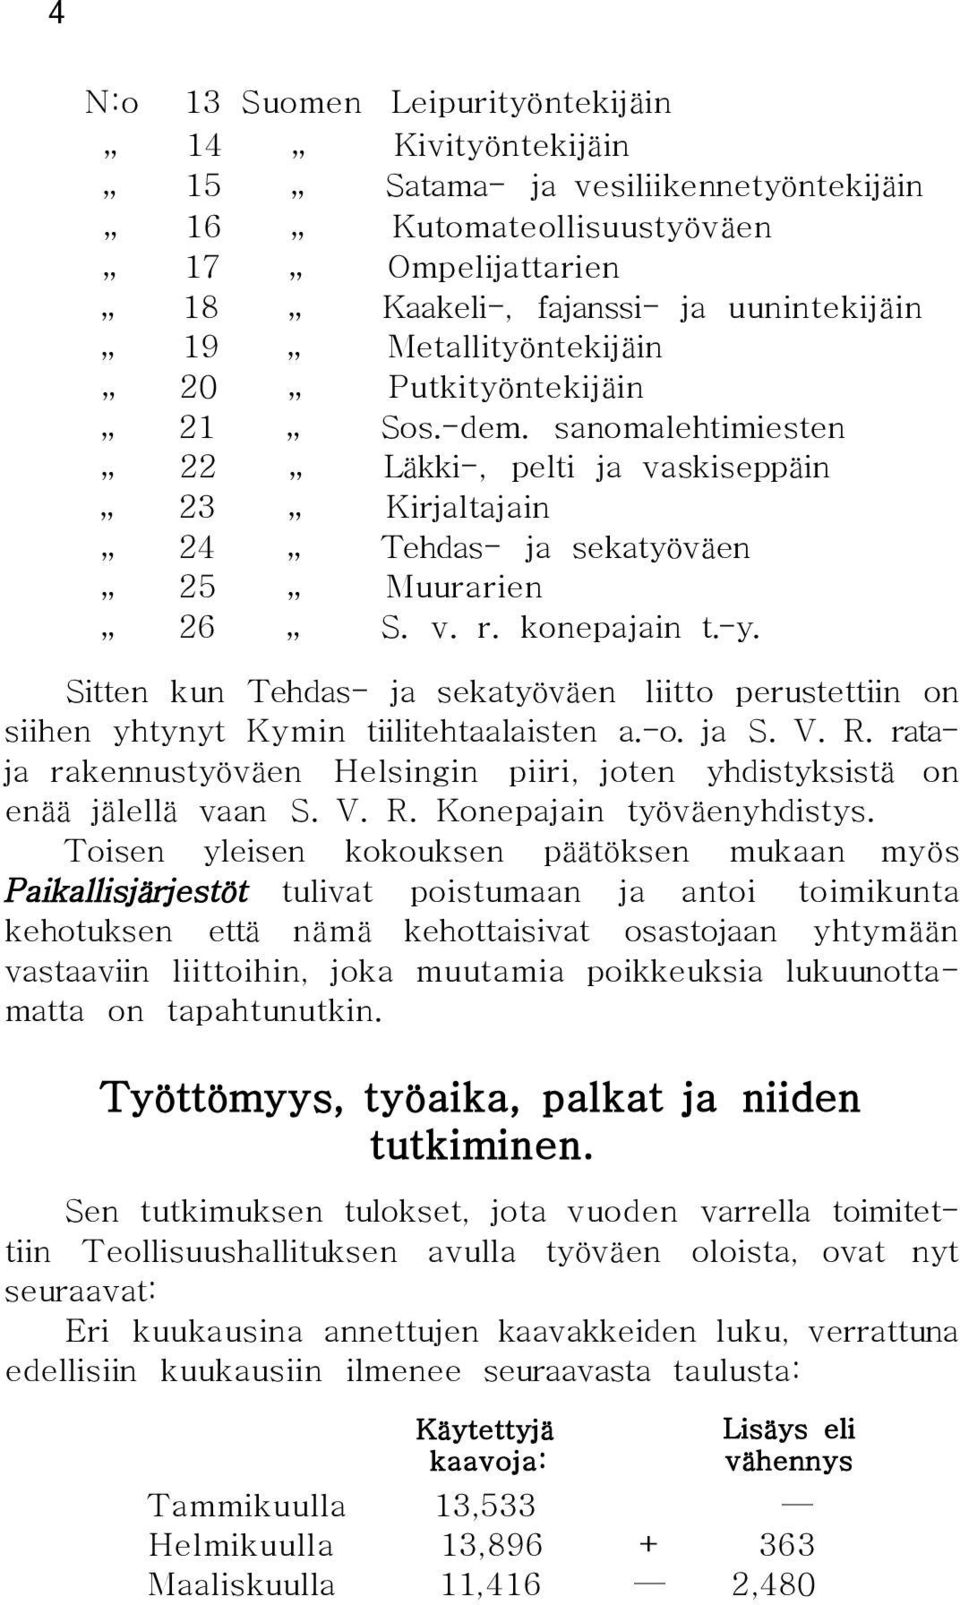 Sitten kun Tehdas- ja sekatyöväen liitto perustettiin on siihen yhtynyt Kymin tiilitehtaalaisten a.-o. ja S. V. R. rataja rakennustyöväen Helsingin piiri, joten yhdistyksistä on enää jälellä vaan S.